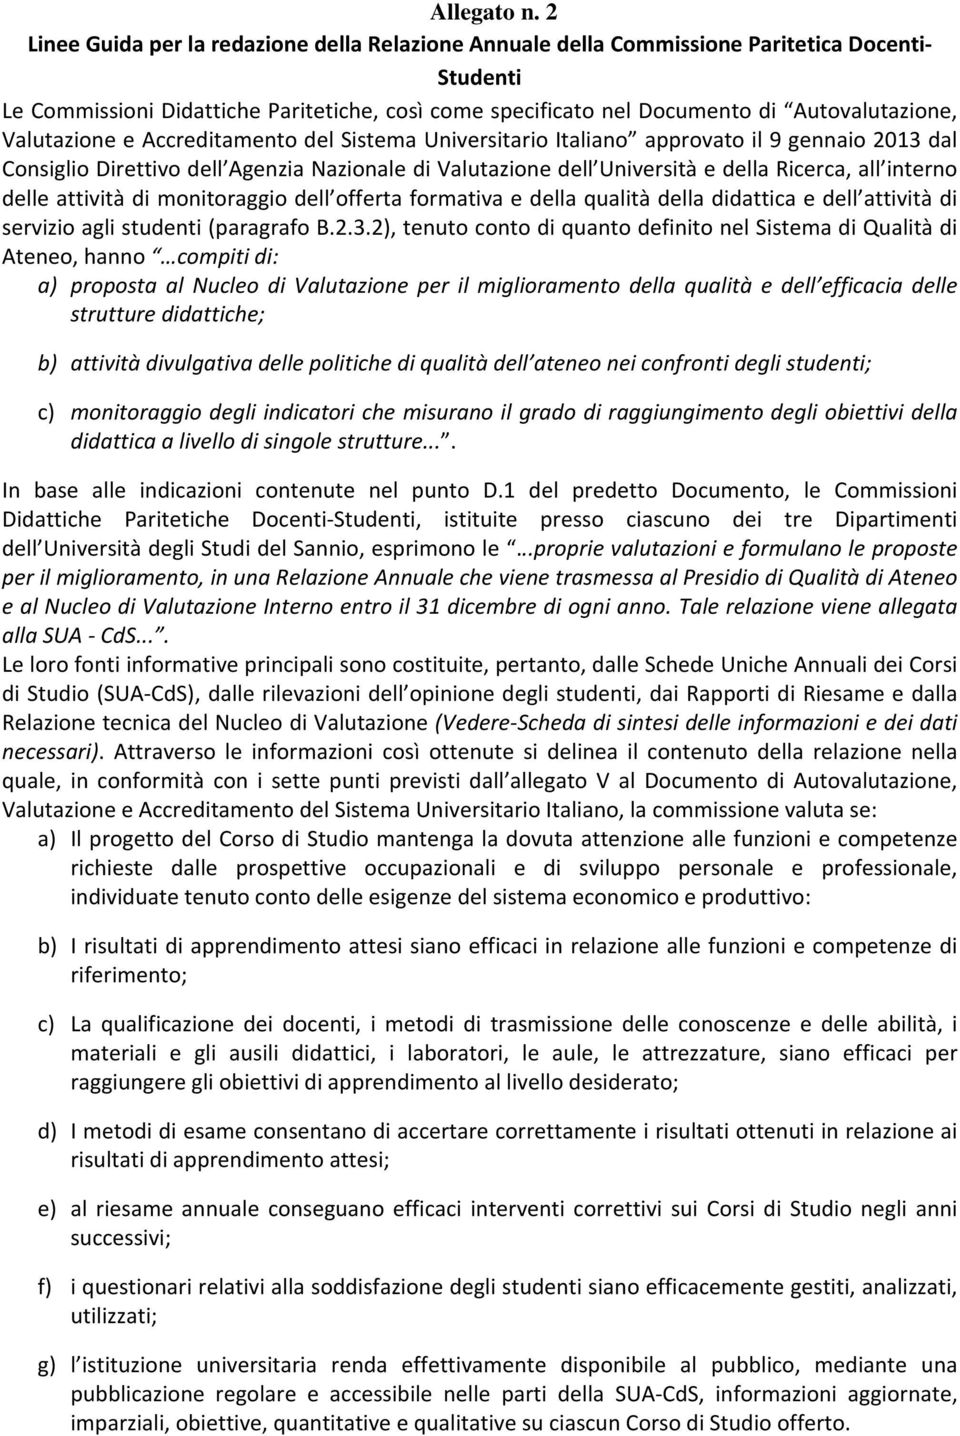 Valutazione e Accreditamento del Sistema Universitario Italiano approvato il 9 gennaio 2013 dal Consiglio Direttivo dell Agenzia Nazionale di Valutazione dell Università e della Ricerca, all interno